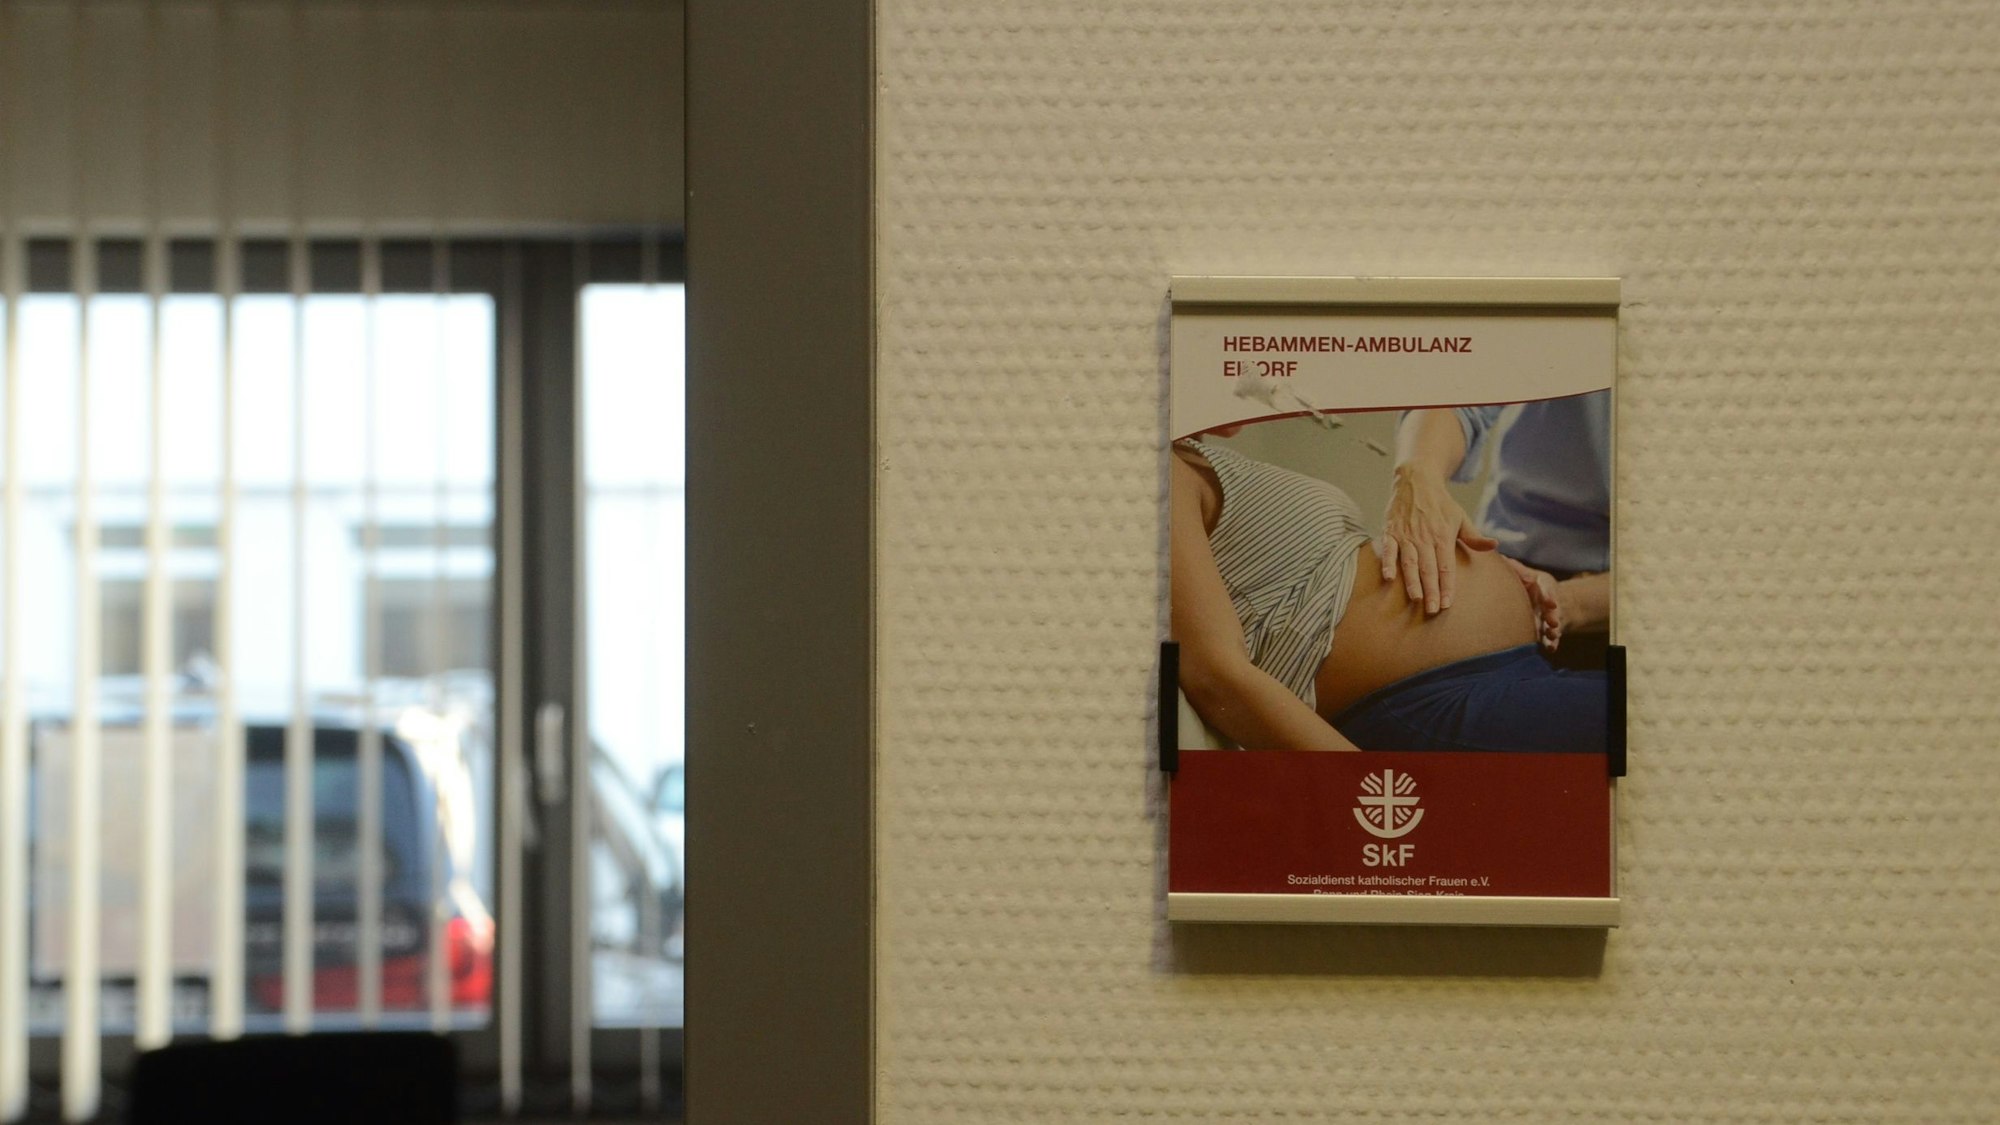 Neben der Tür in ein Beratungszimmer hängt das Plakat mit Werbung für die Hebammenambulanz.